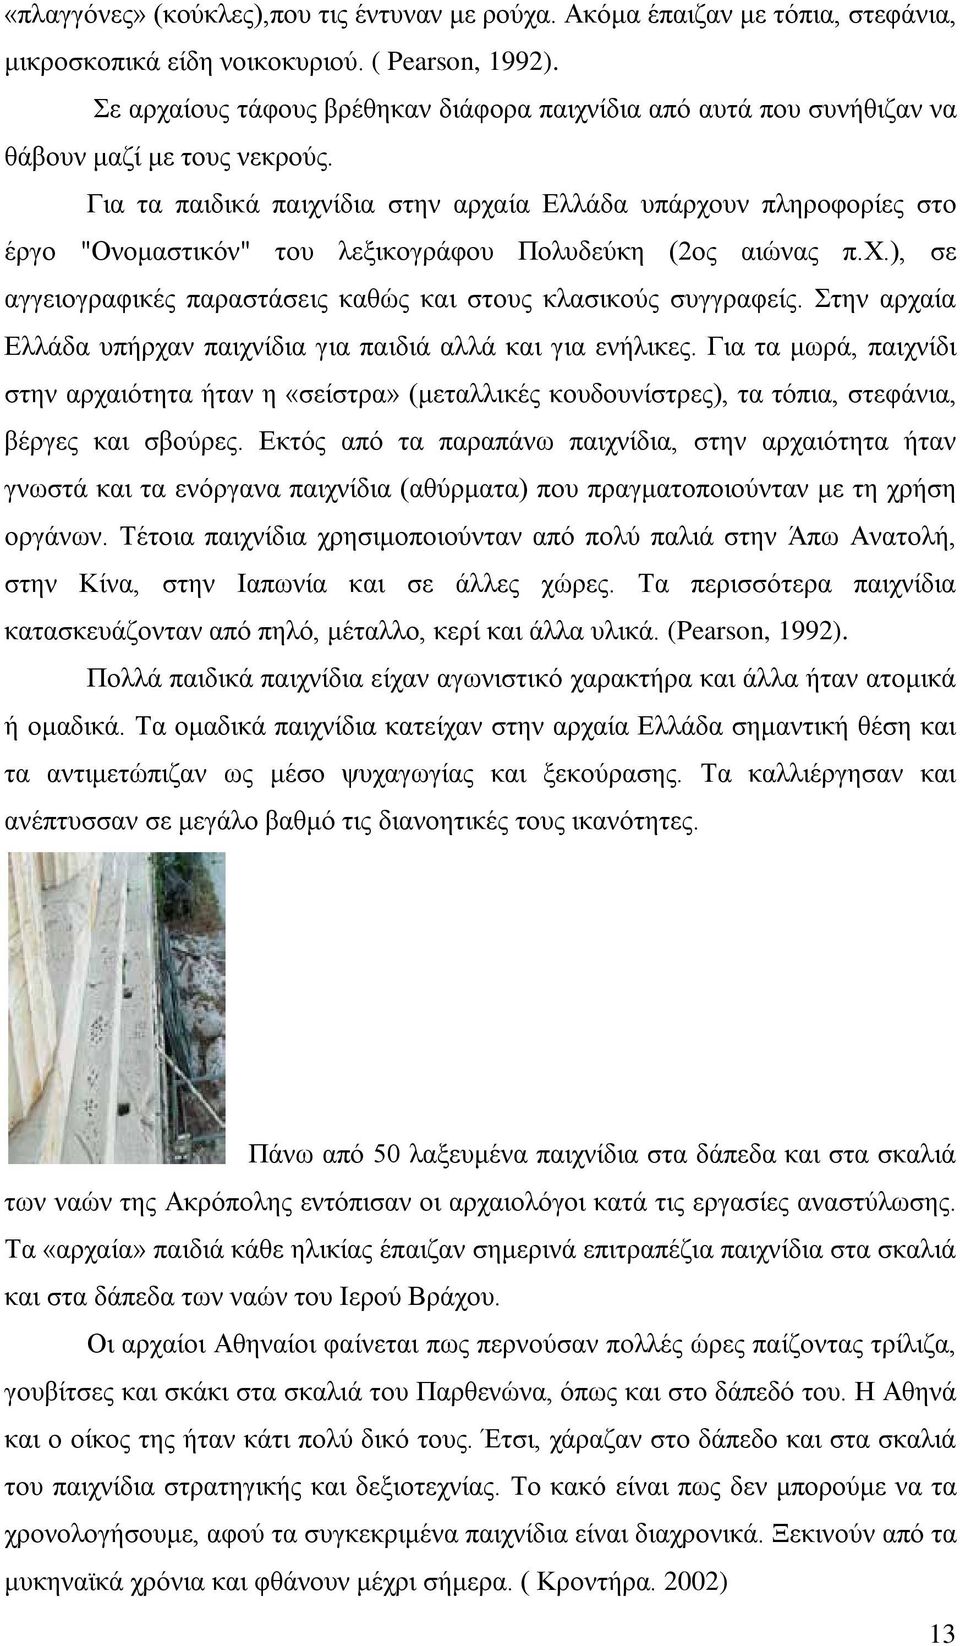 Για τα παιδικά παιχνίδια στην αρχαία Ελλάδα υπάρχουν πληροφορίες στο έργο "Ονομαστικόν" του λεξικογράφου Πολυδεύκη (2ος αιώνας π.χ.), σε αγγειογραφικές παραστάσεις καθώς και στους κλασικούς συγγραφείς.